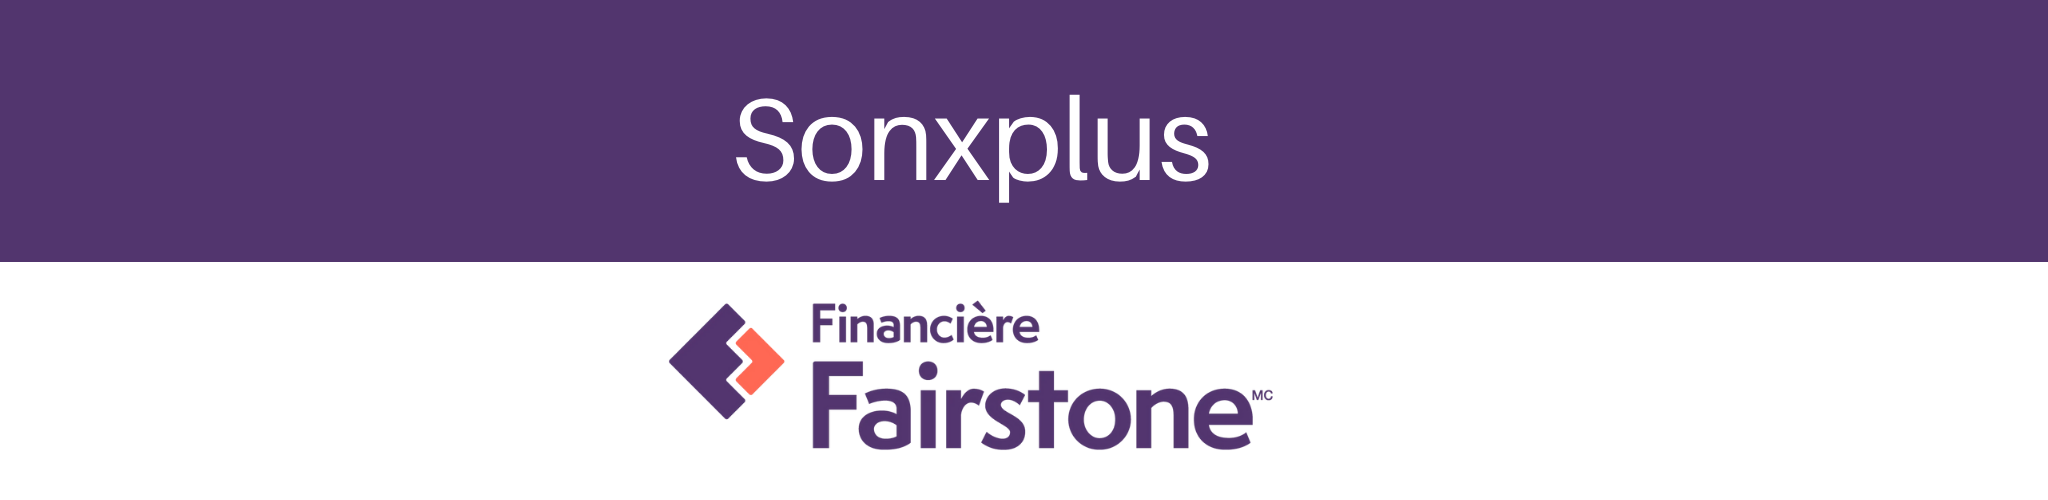 Financement Financière Fairstone achats électroniques | Sonxplus Val-des-Sources